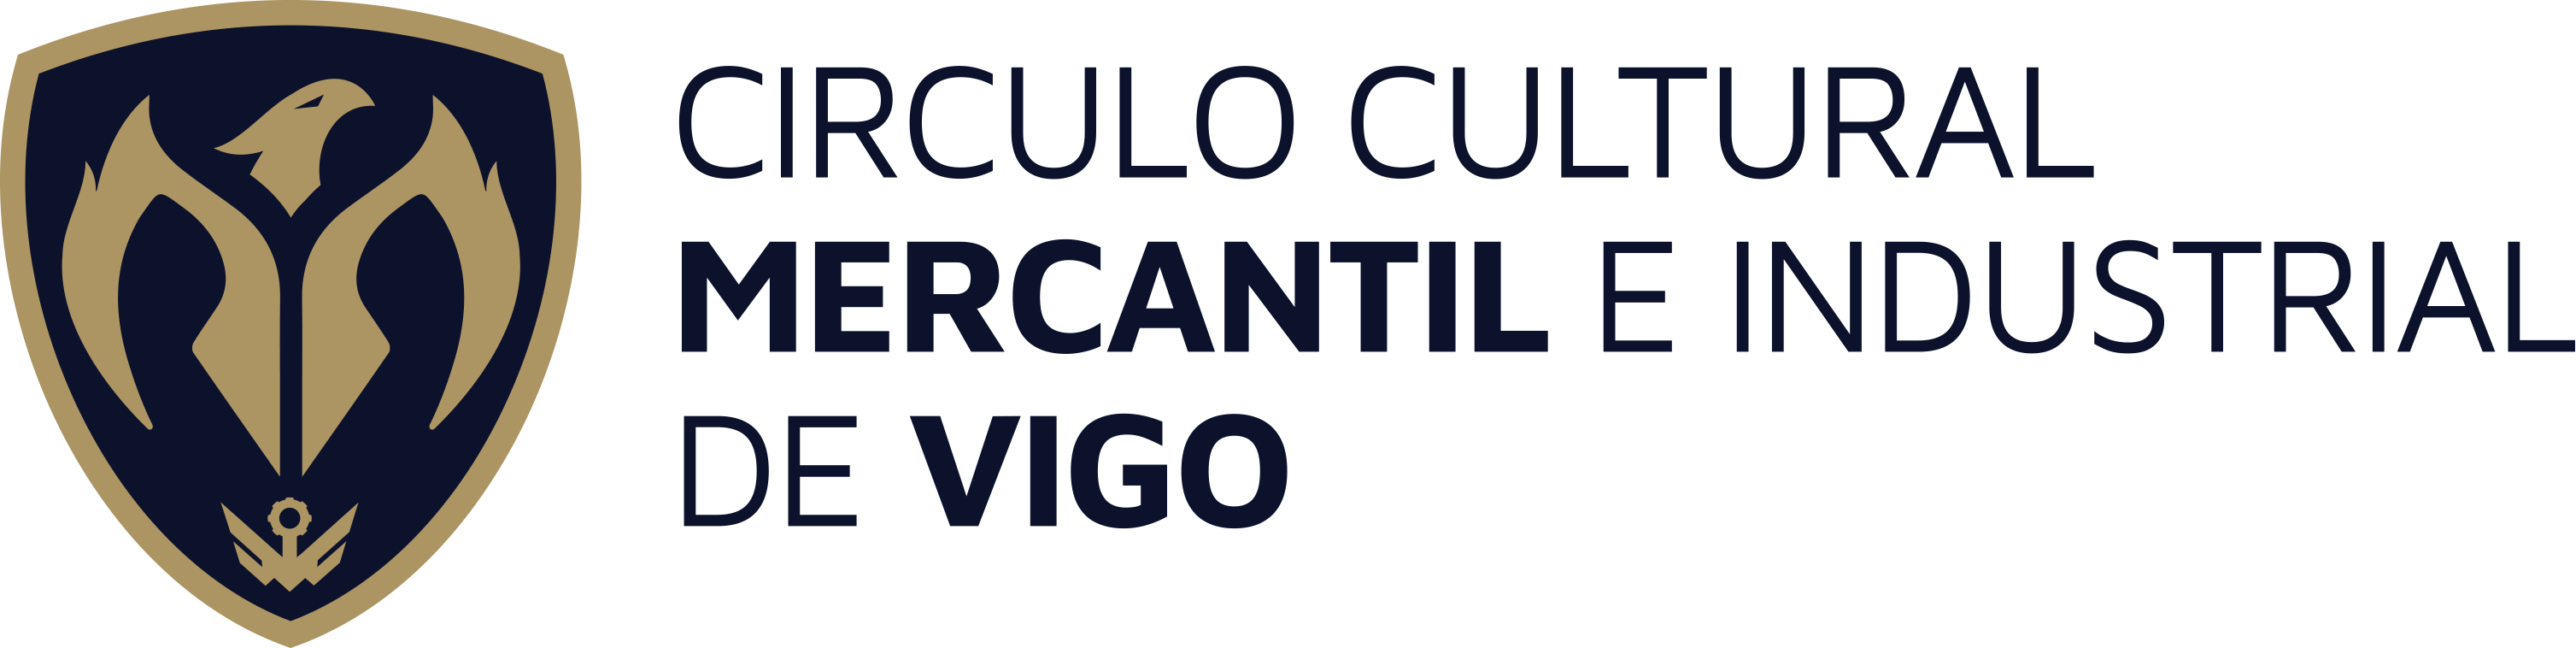 Círculo Cultural Mercantil e Industrial de Vigo